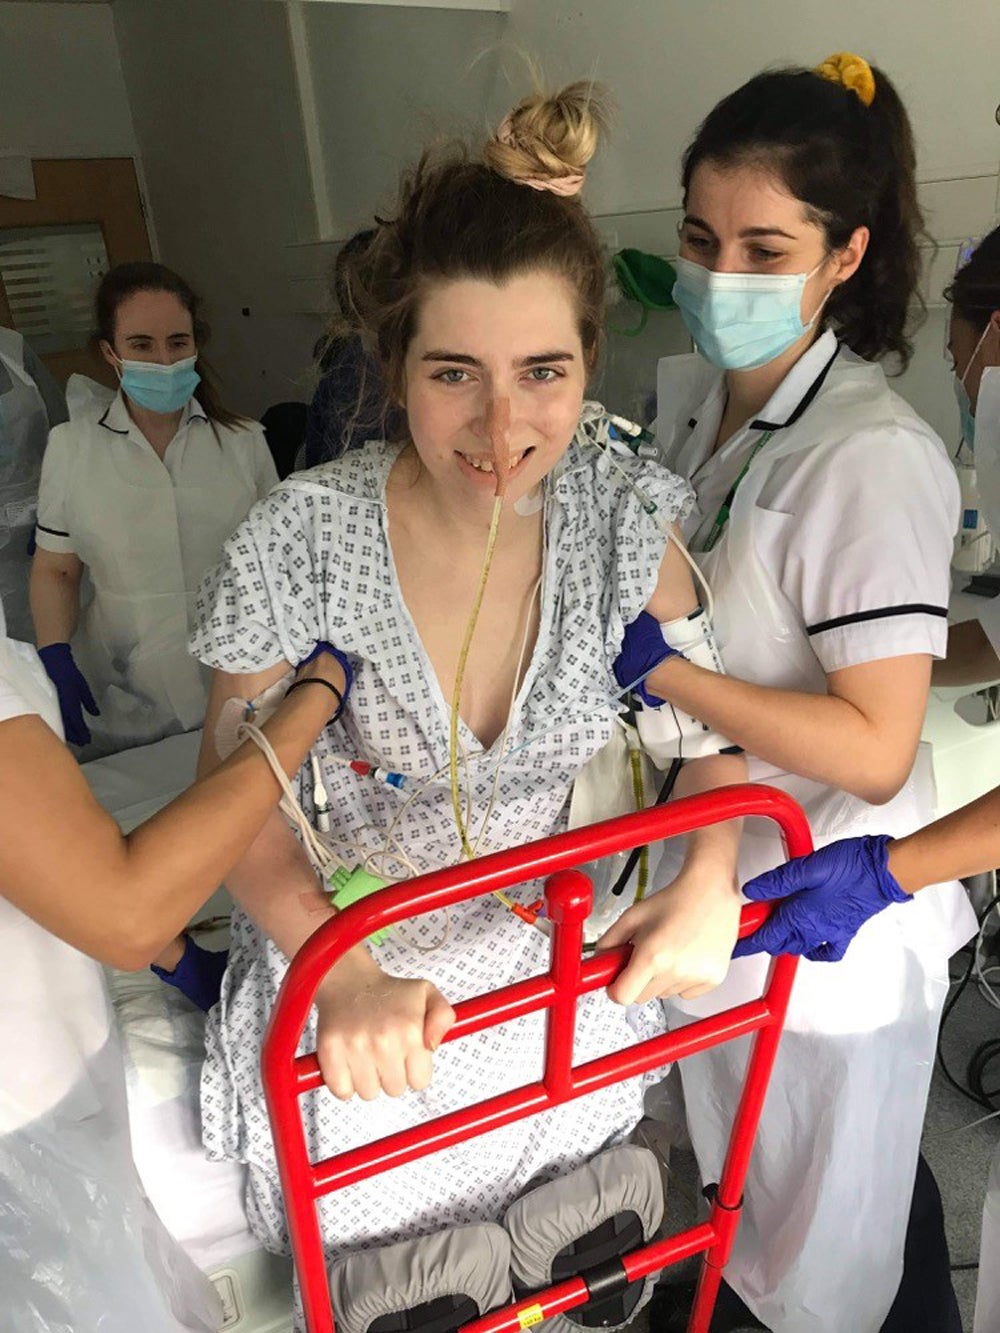 Sophie Anderson, de 24 años, aprendiendo como pararse otra vez con la ayuda de los enfermeros